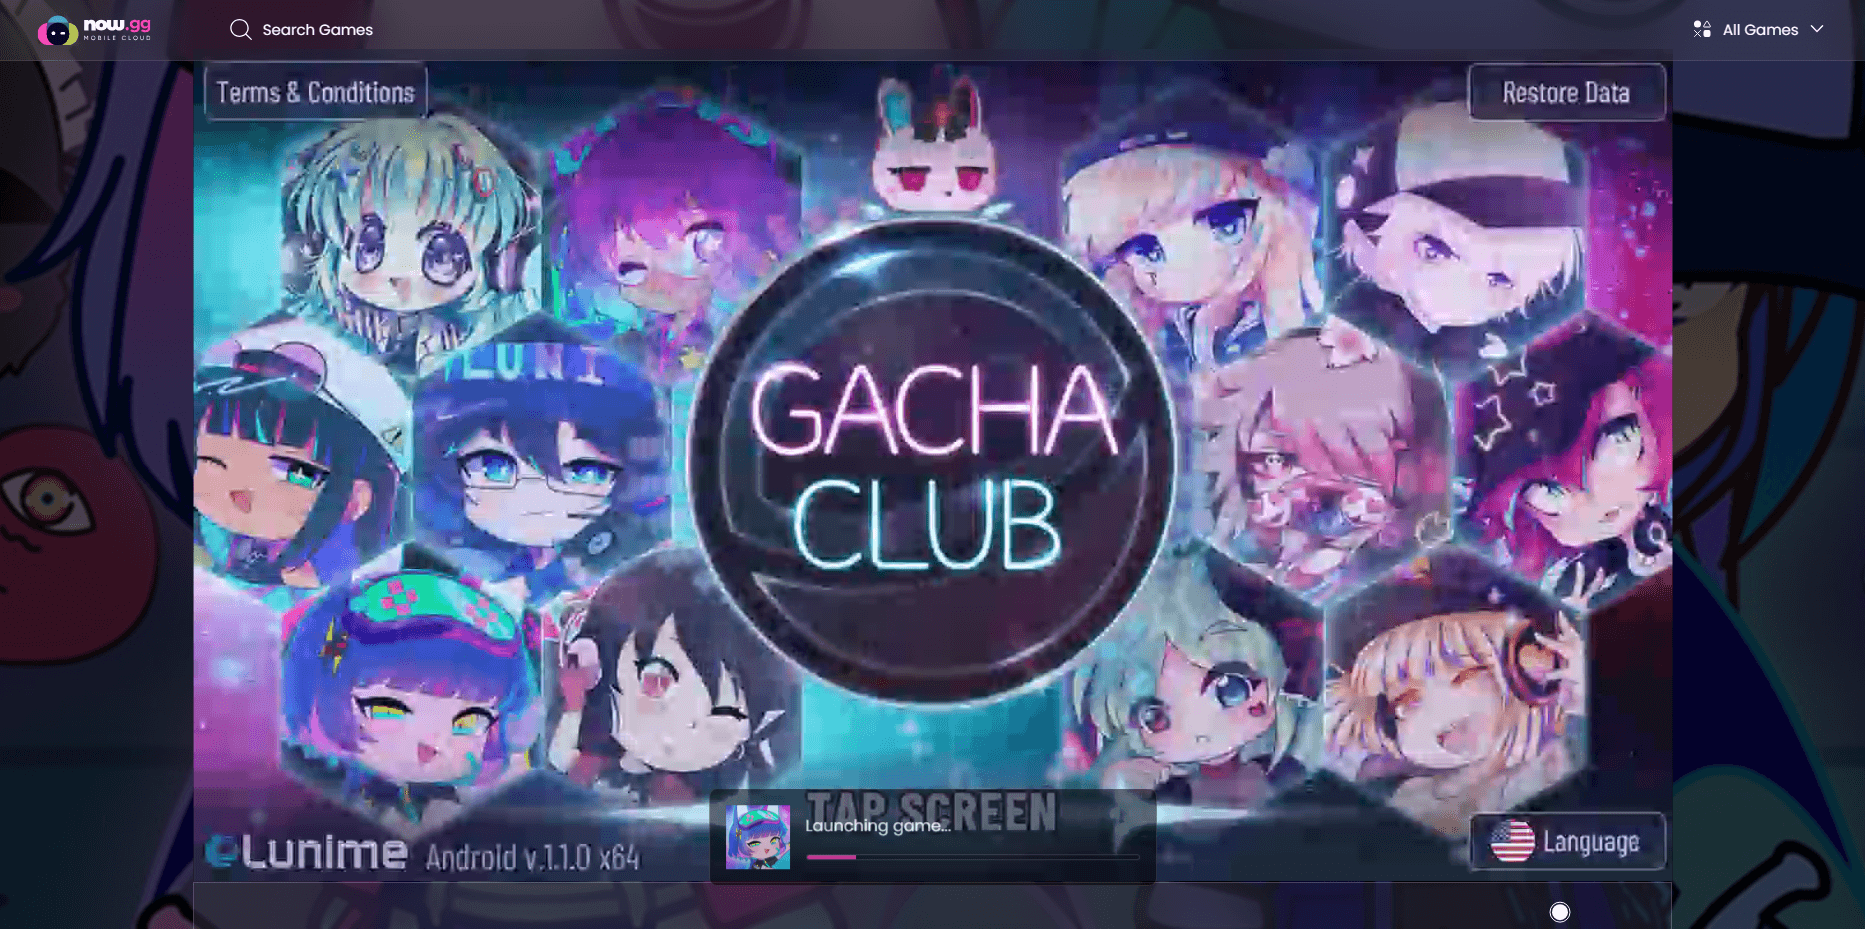 เล่น Gacha Club ได้ทุกที่ด้วย Now.gg InstaPlay - โซลูชันการเล่นเกมบนคลาวด์ของคุณ